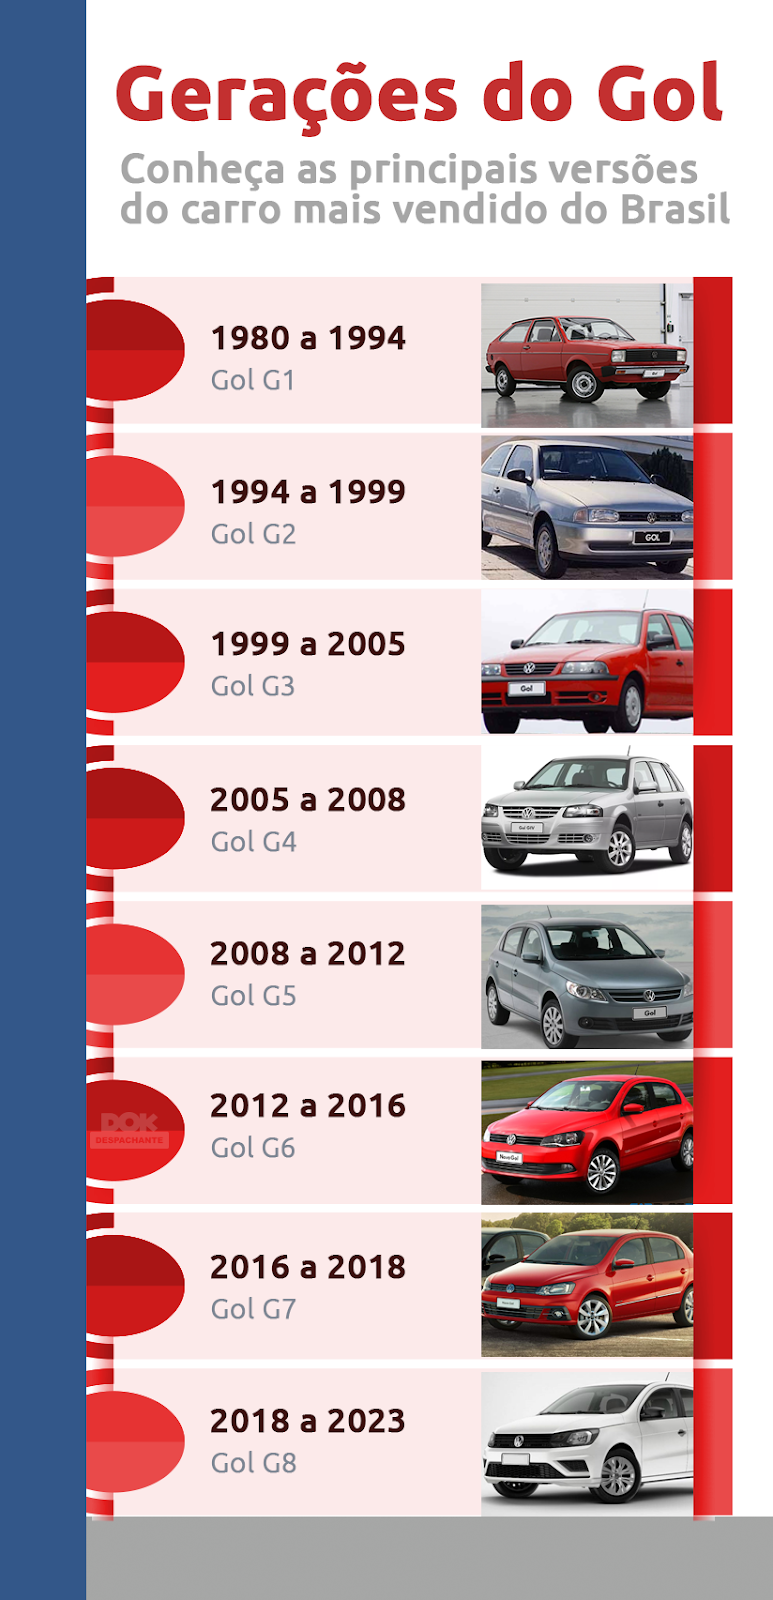 Especial Gol sai de linha:
Infográfico - Gerações do Volkswagen Gol
- G1 de 1980 a 1994
- G2 de 1994 a 1999
- G3 de 1999 a 2005
- G4 de 2005 a 2008
- G5 de 2008 a 2012
- G6 de 2012 a 2016
- G7 de 2016 a 2018
- G8 de 2018 a 2023
| DOK Despachante